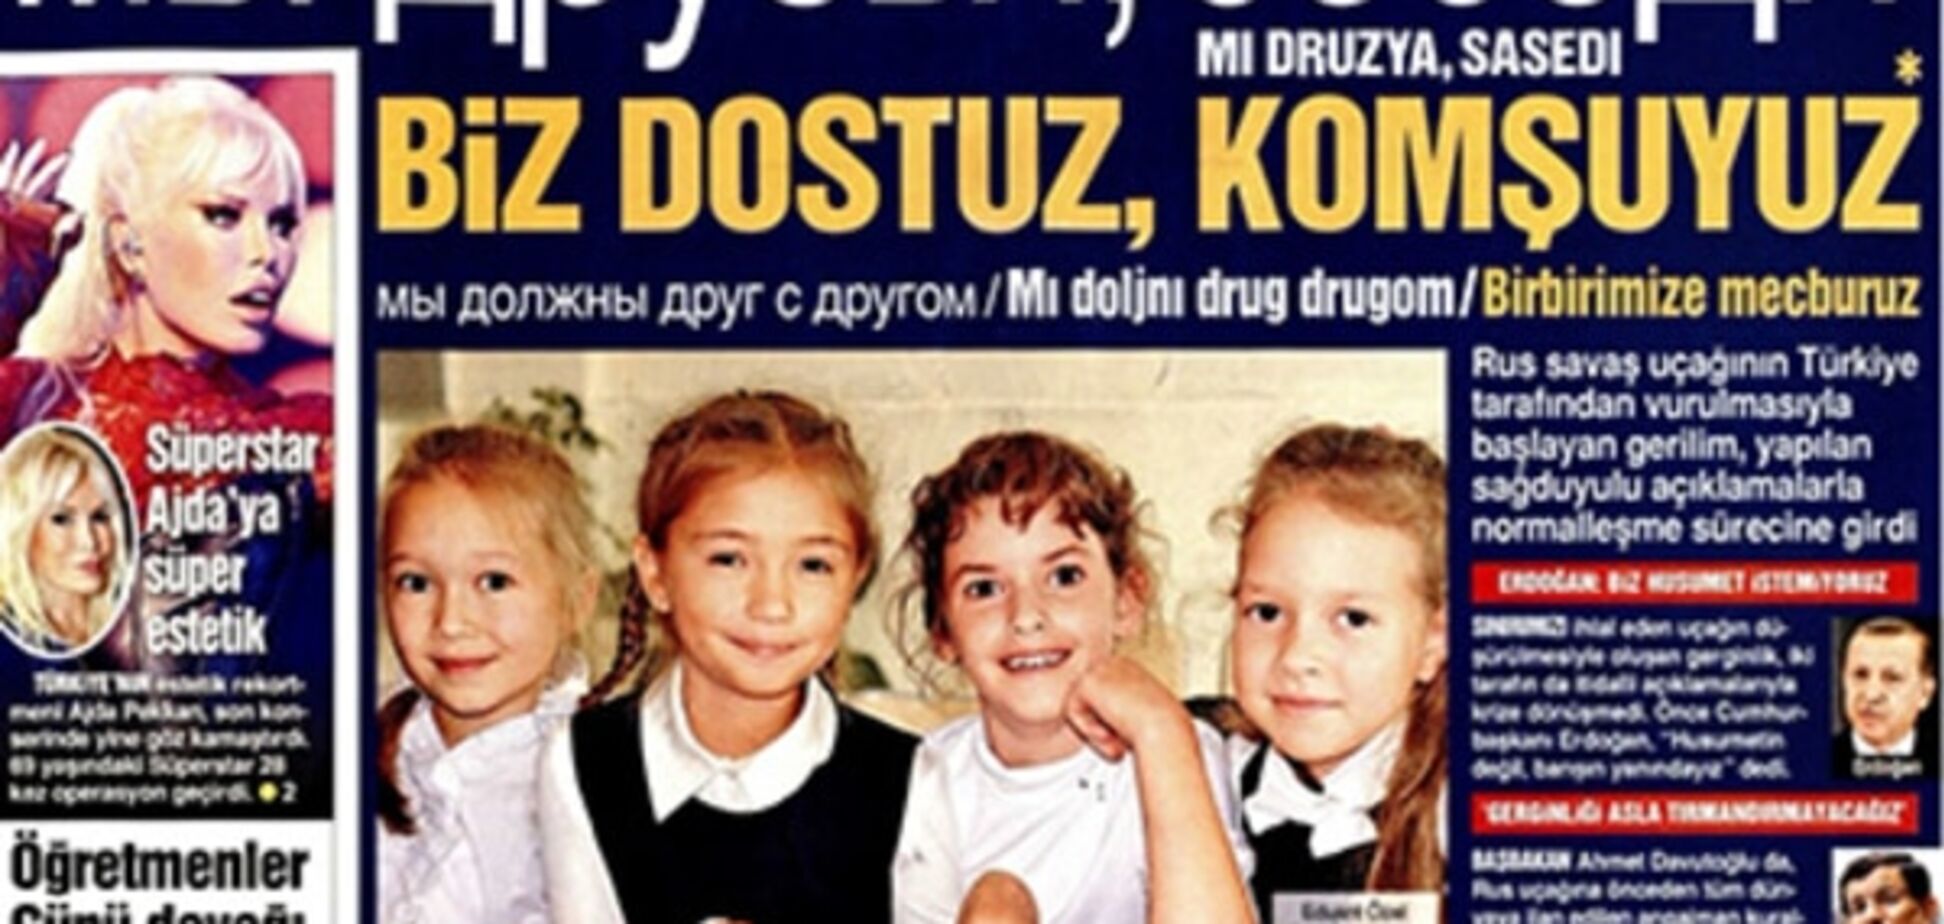 'Мы друзья, соседи': турецкая газета вышла с русским заголовком, фотофакт